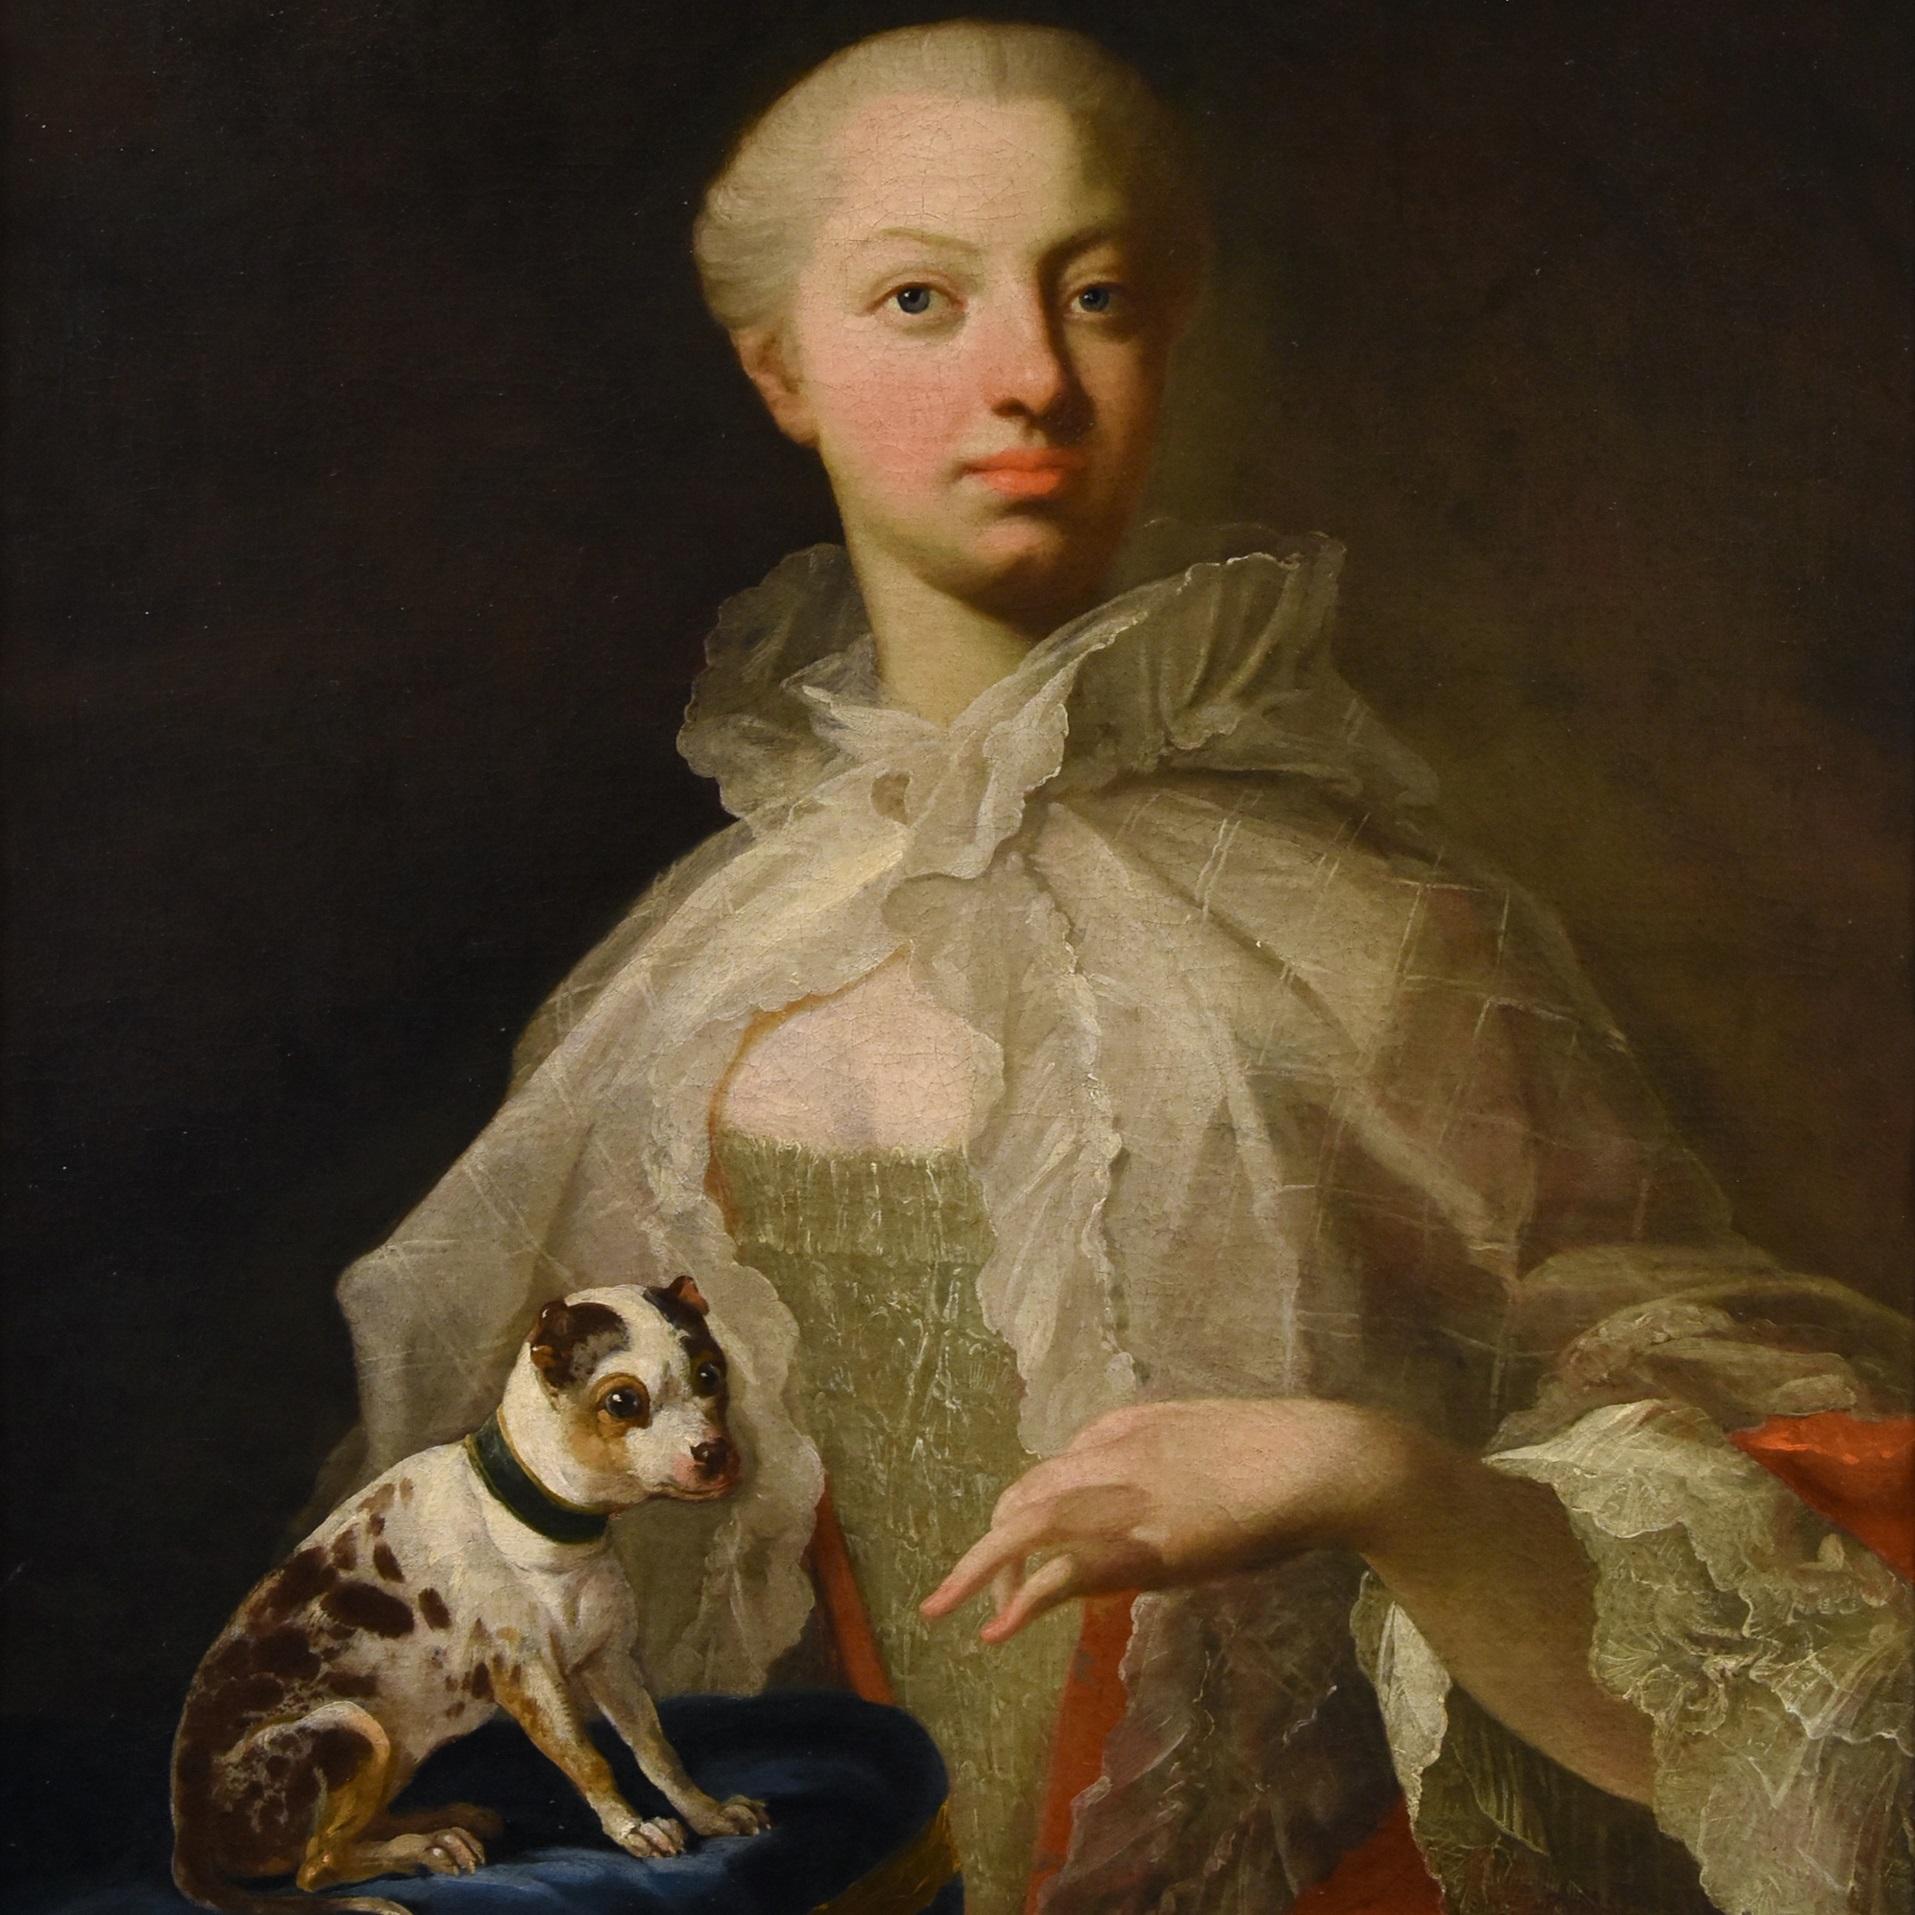 Portrait Noblewoman Dog Van Loo Peinture 18ème siècle Huile sur toile Grand maître Art - Maîtres anciens Painting par Louis Michel Van Loo (toulon 1707- Paris 1771)